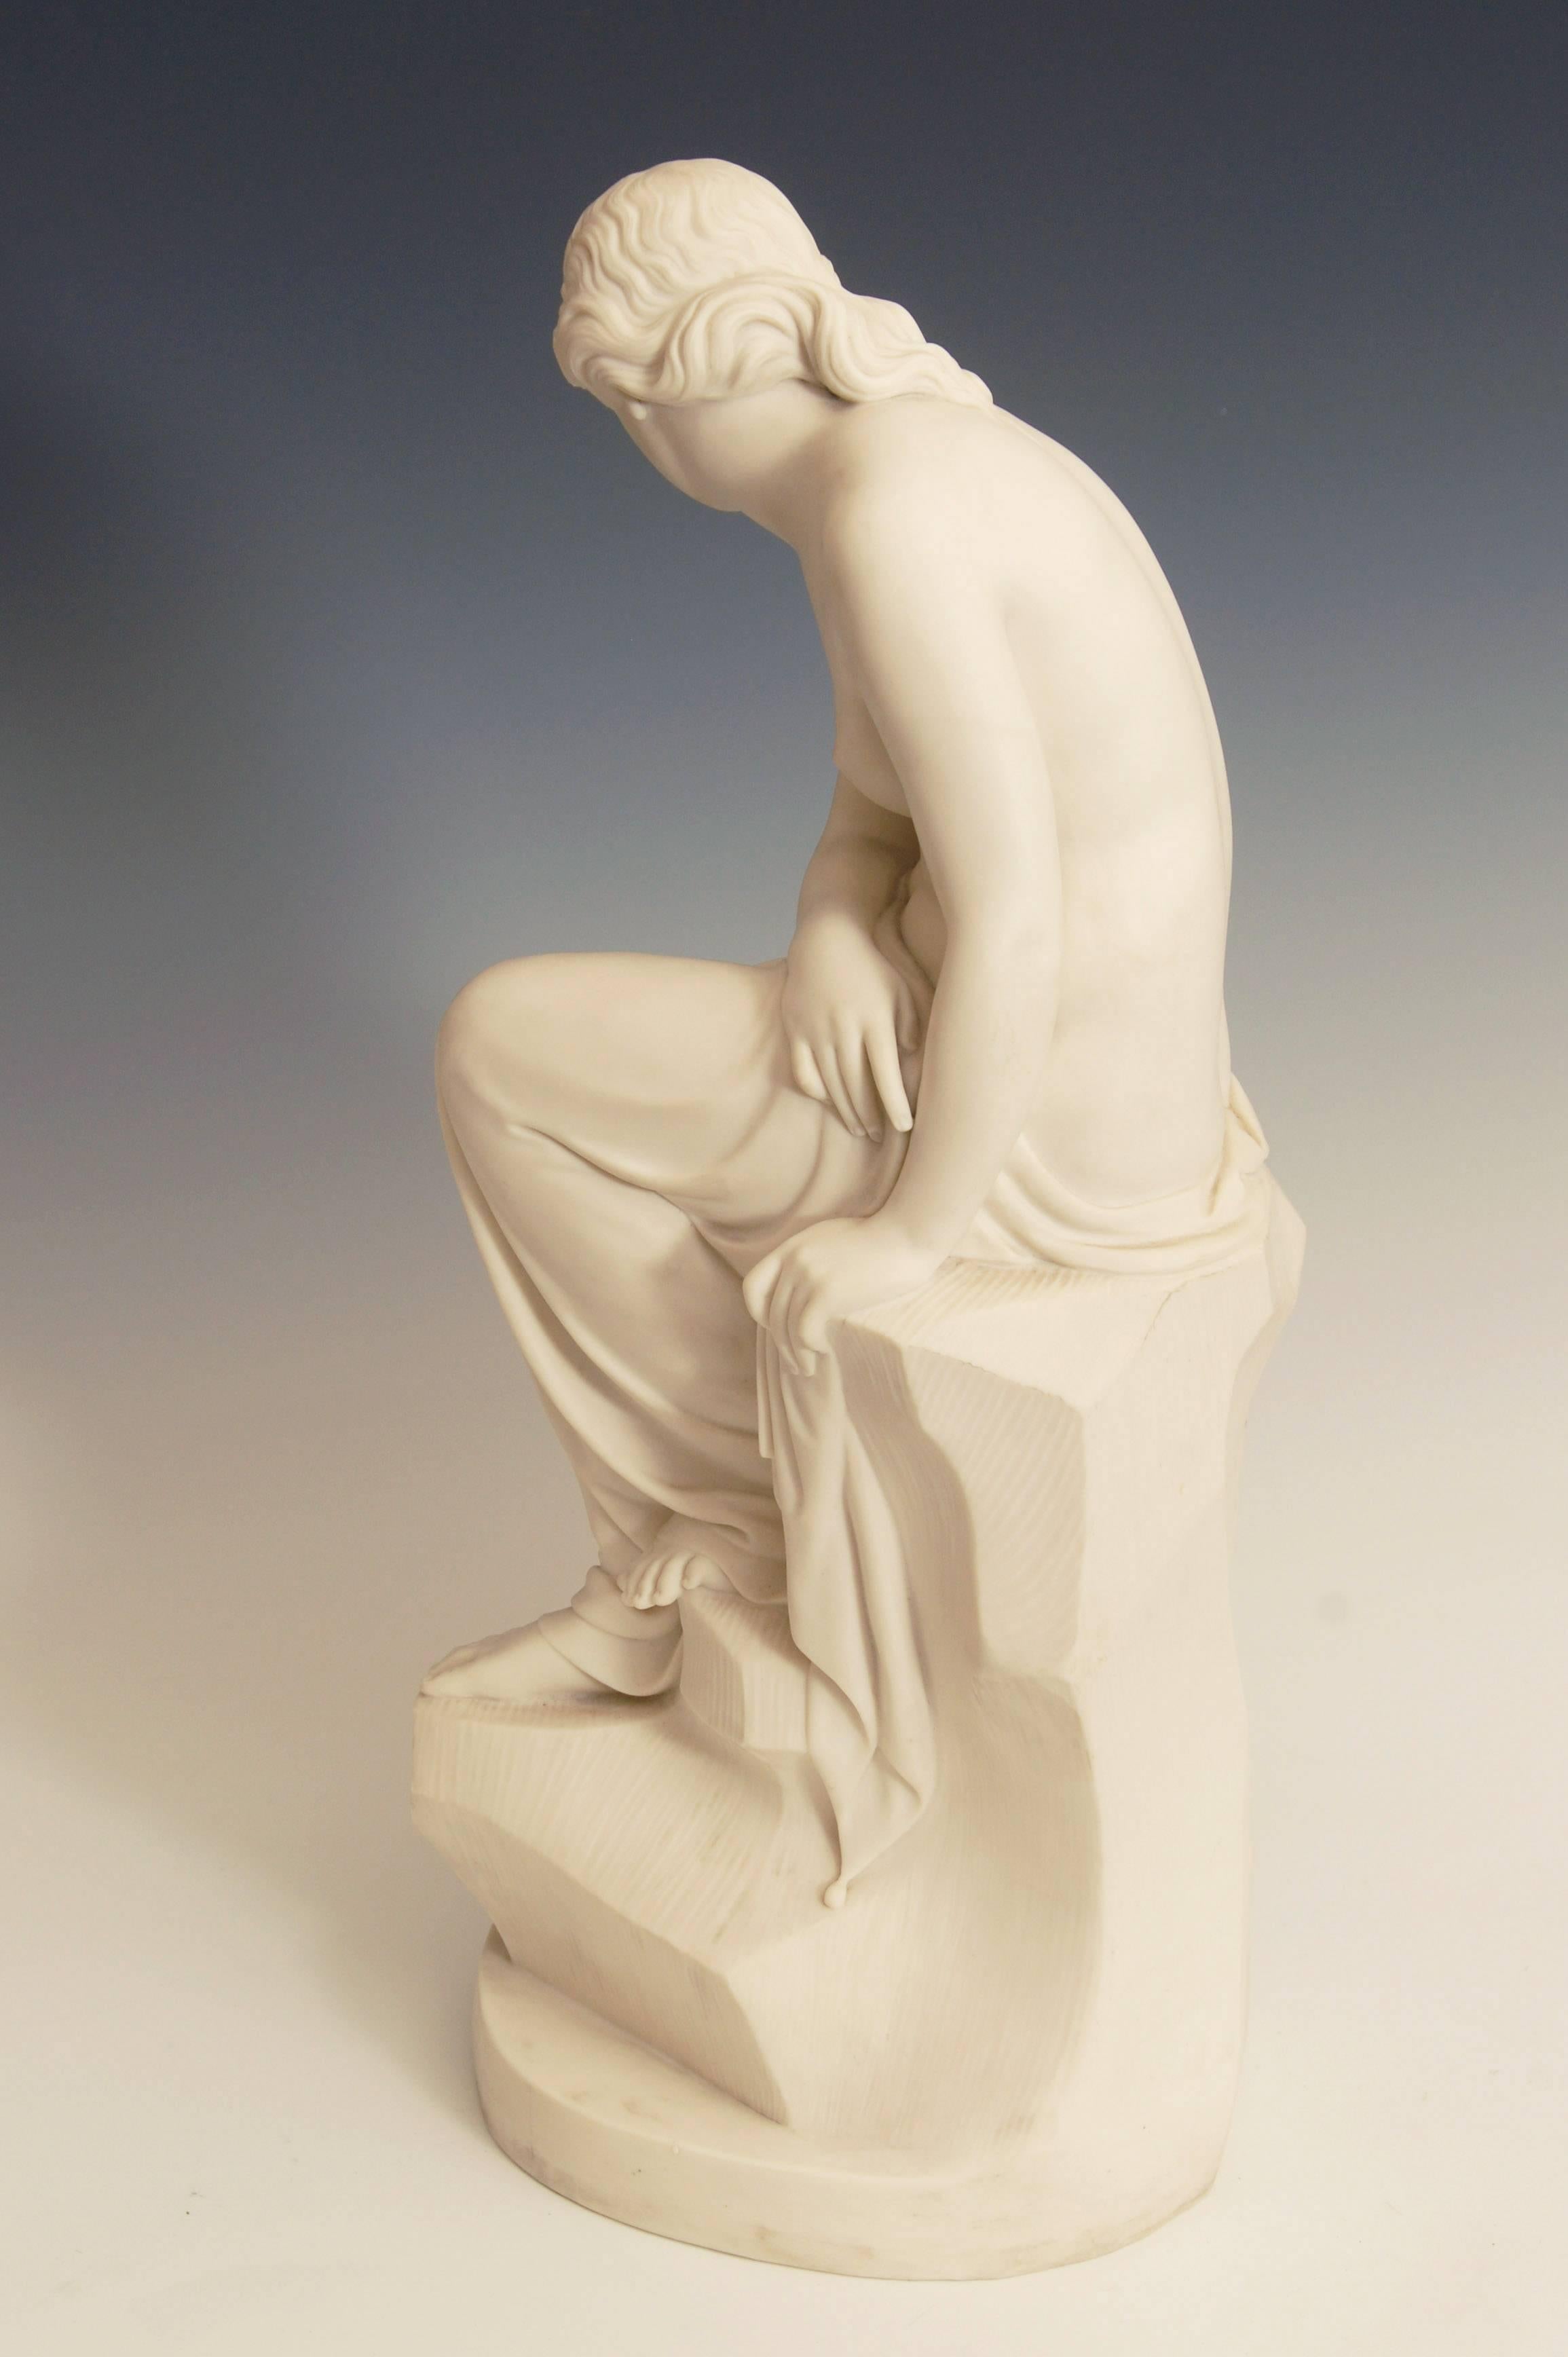 19th Century Minton Art Union Parian Figure, 'Solitude' by J. Lawlor, 1852